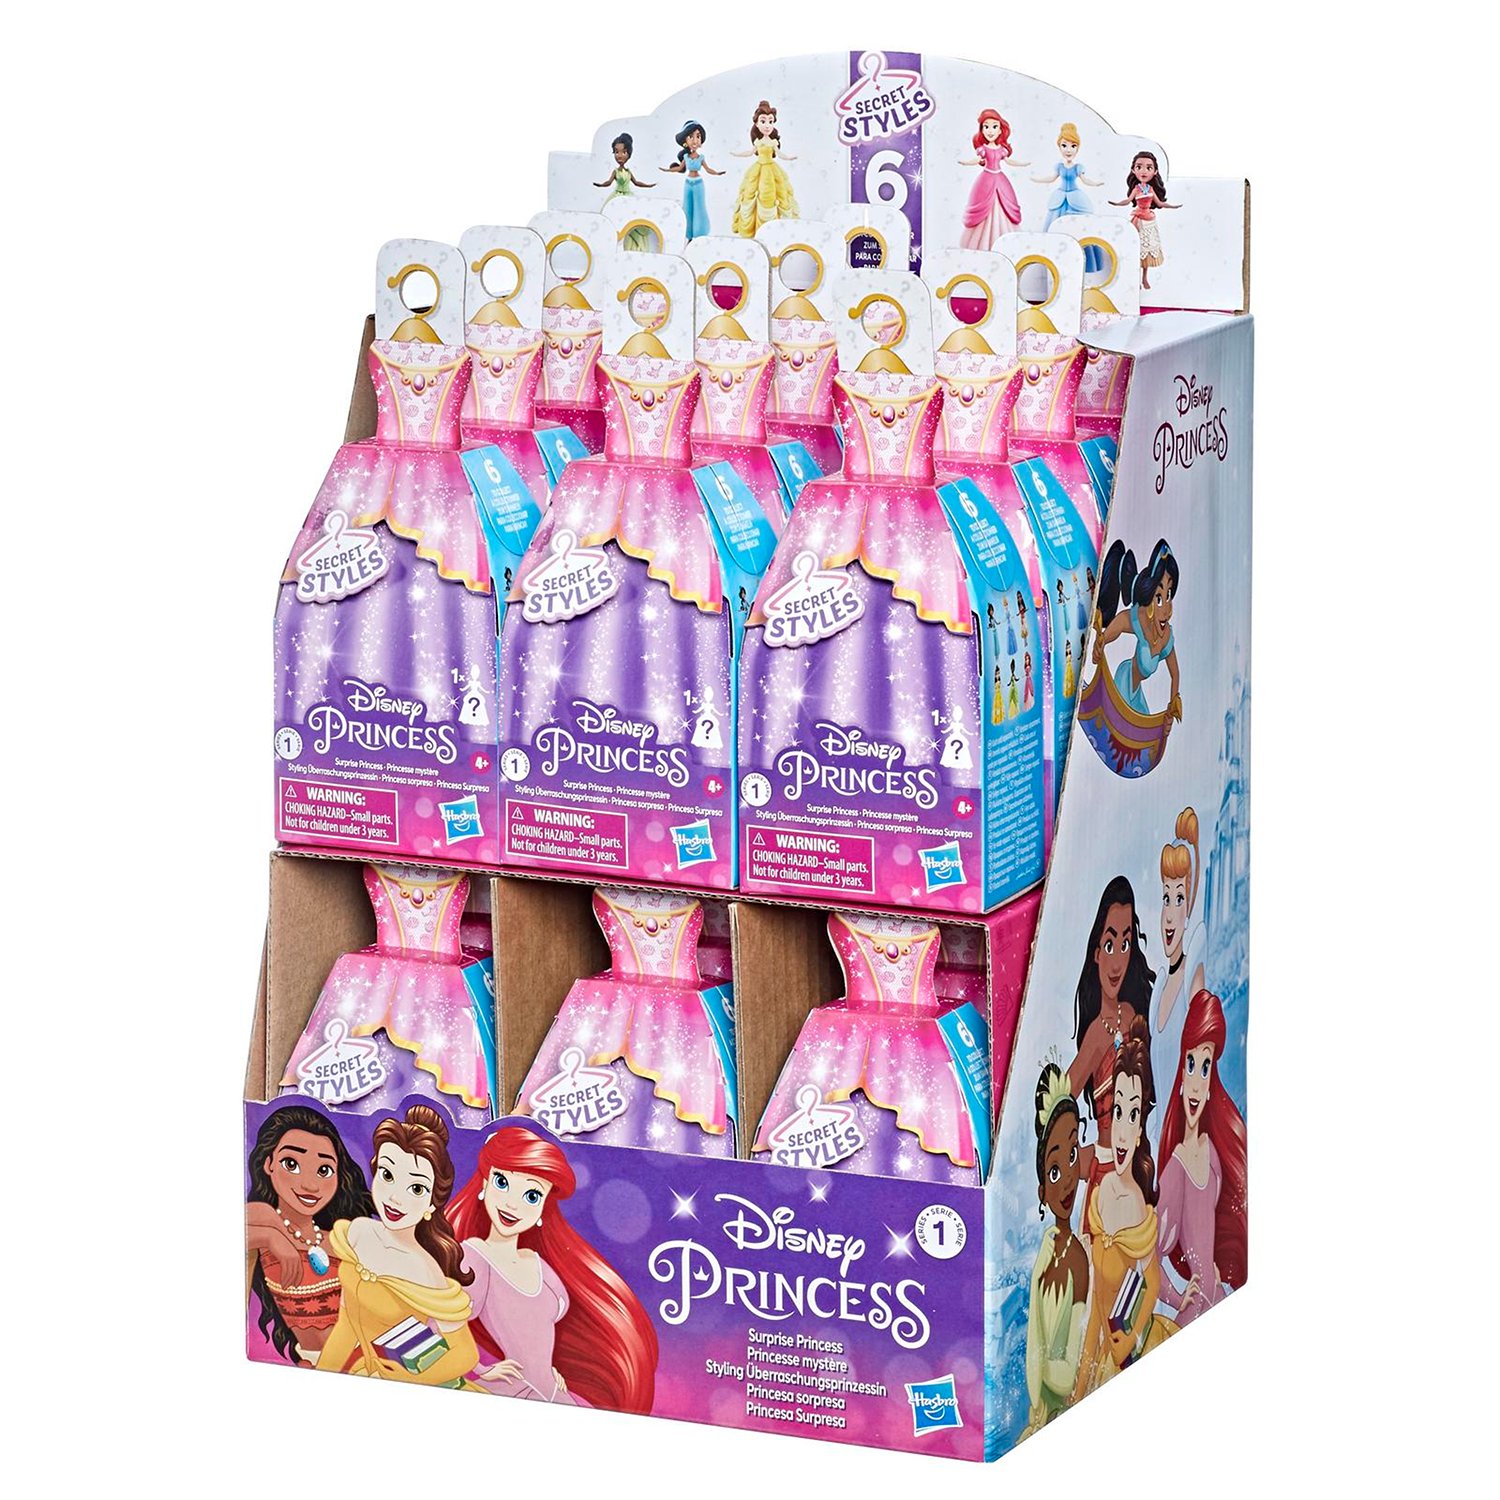 Дисней сюрпризы. Куклы Хасбро принцессы Дисней. Куклы носборо принцессы Дисней. Disney Princess Hasbro f3382eu4. Disney Princess Hasbro в непрозрачной упаковке.